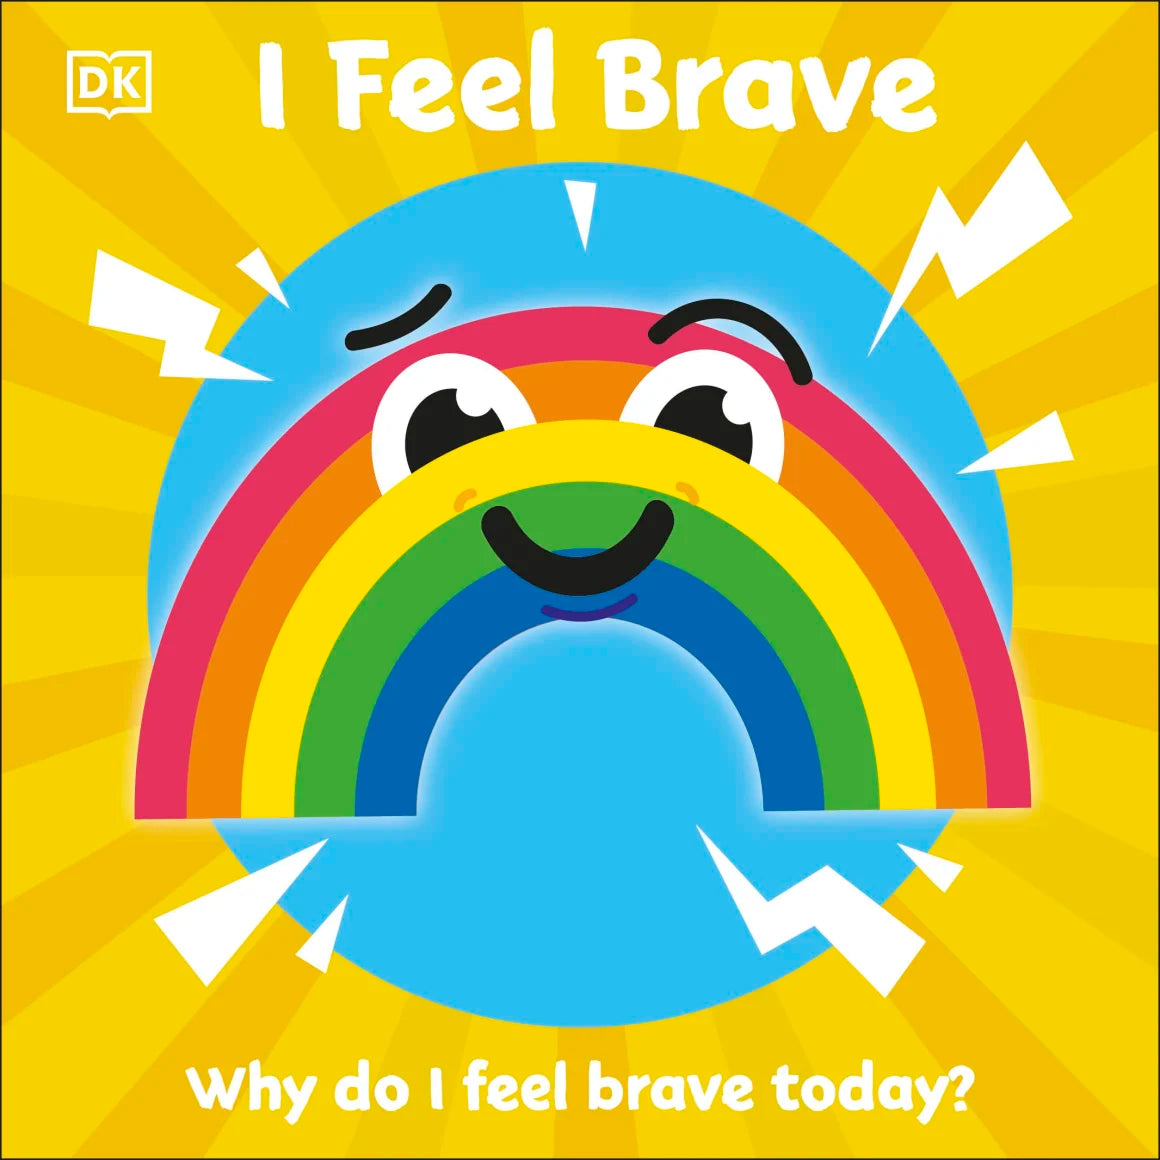 DK Books - I Feel Brave